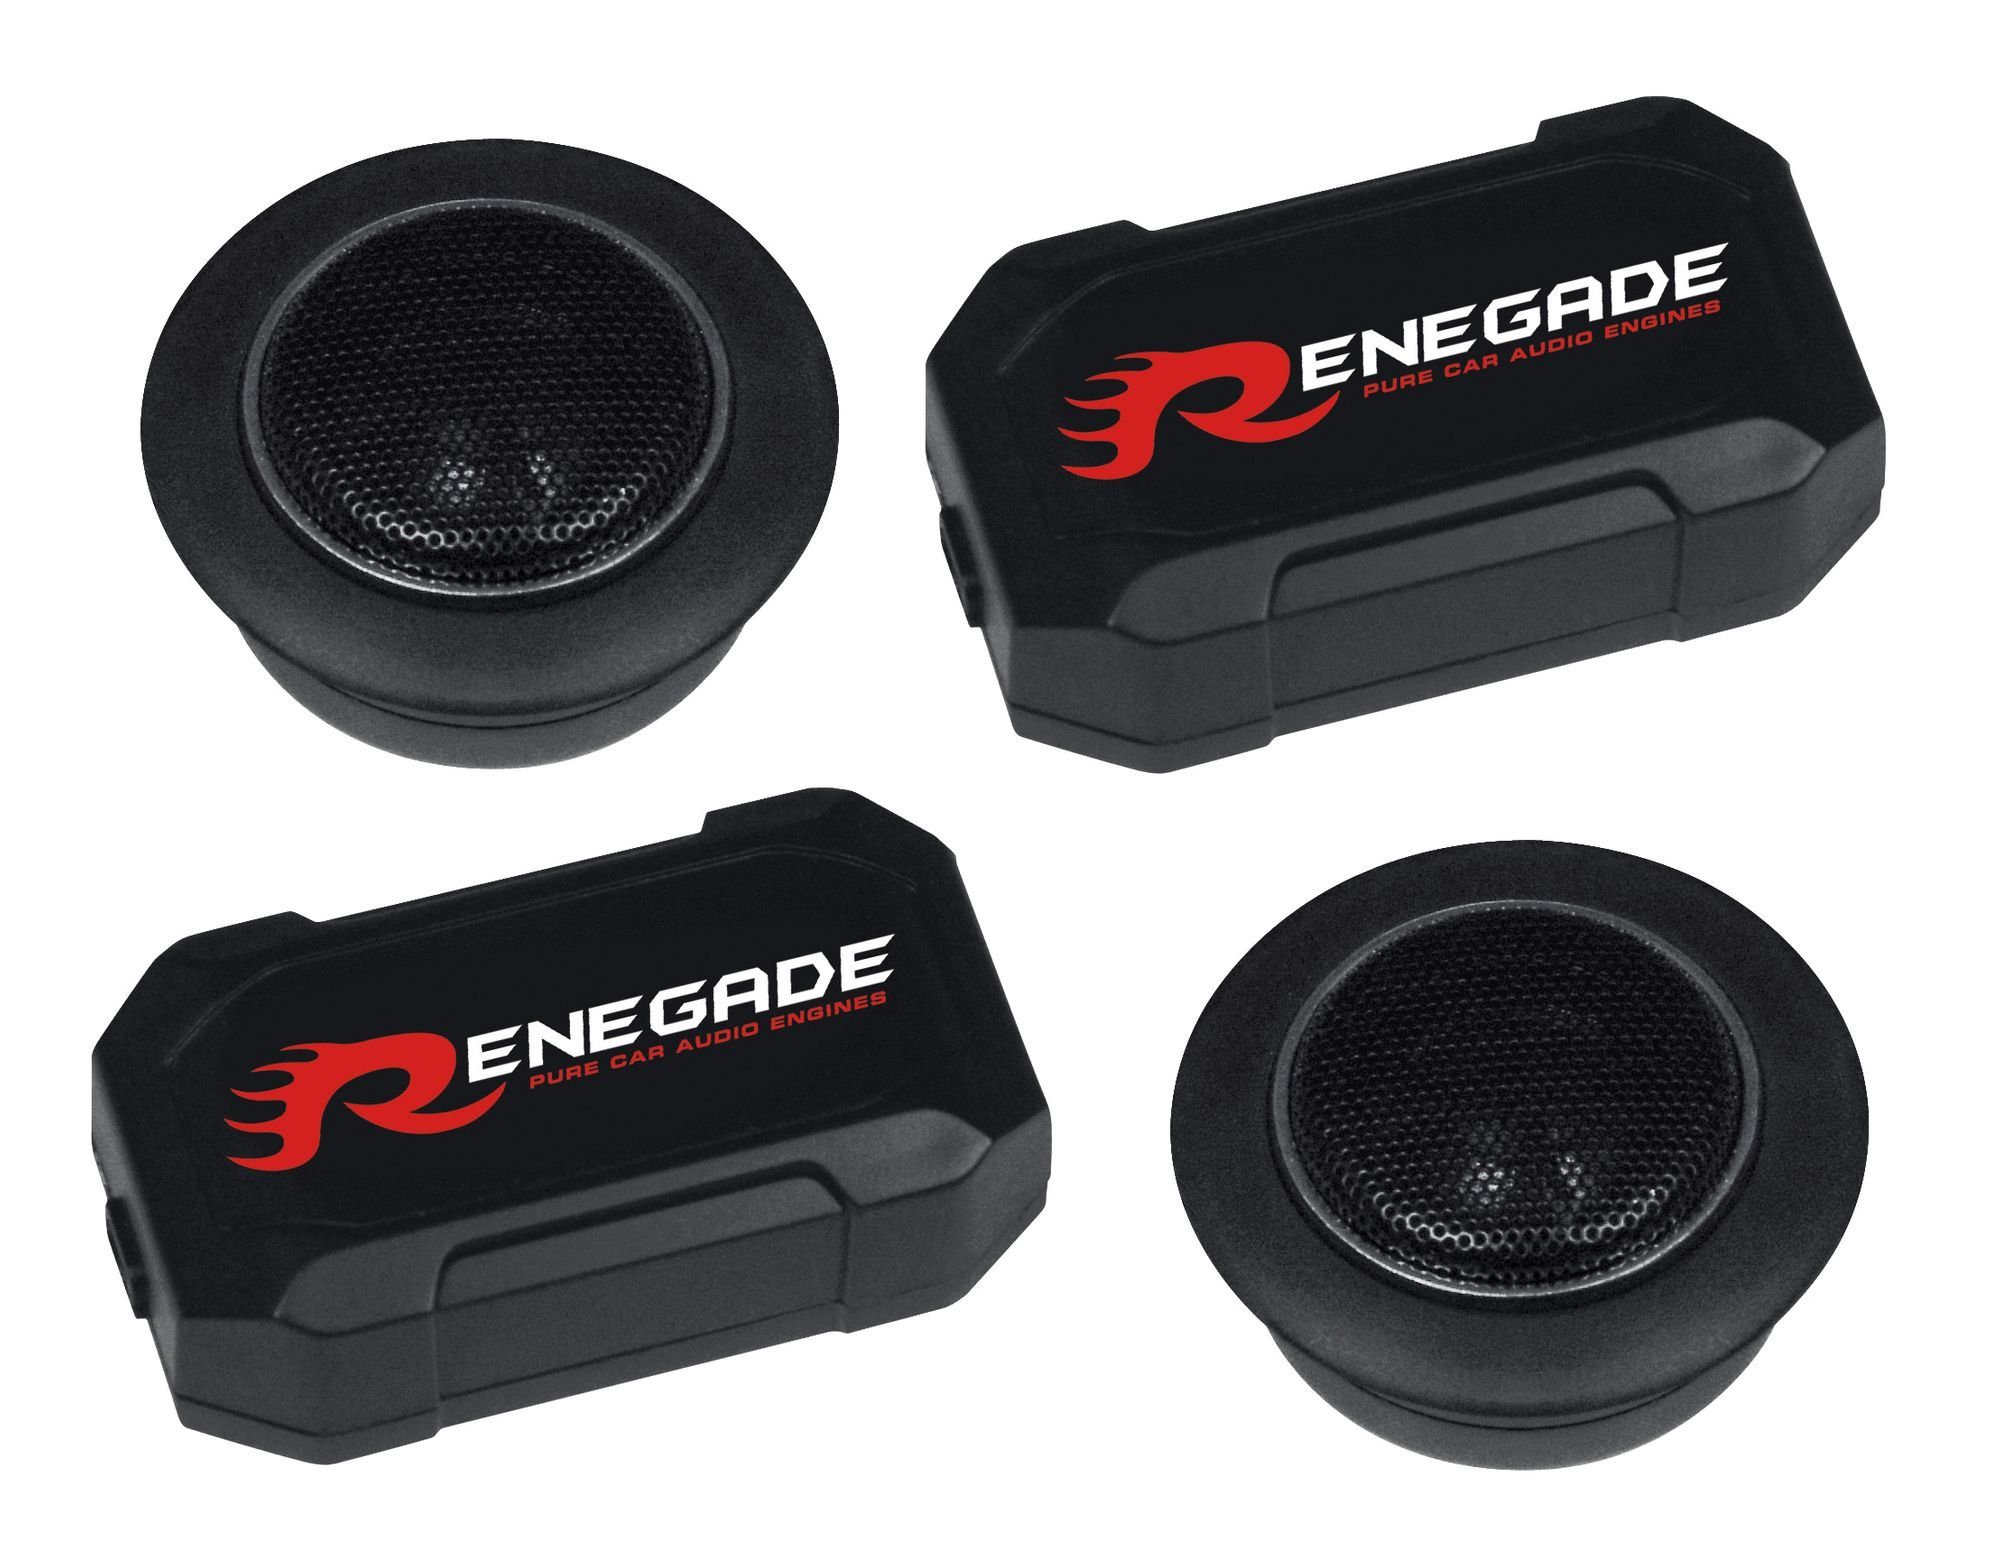 Renegade RX 6.2T Gewebe Hochtöner mit Frequenzweichen Auto-Lautsprecher (Renegade RX 6.2T Gewebe Hochtöner mit Frequenzweichen)